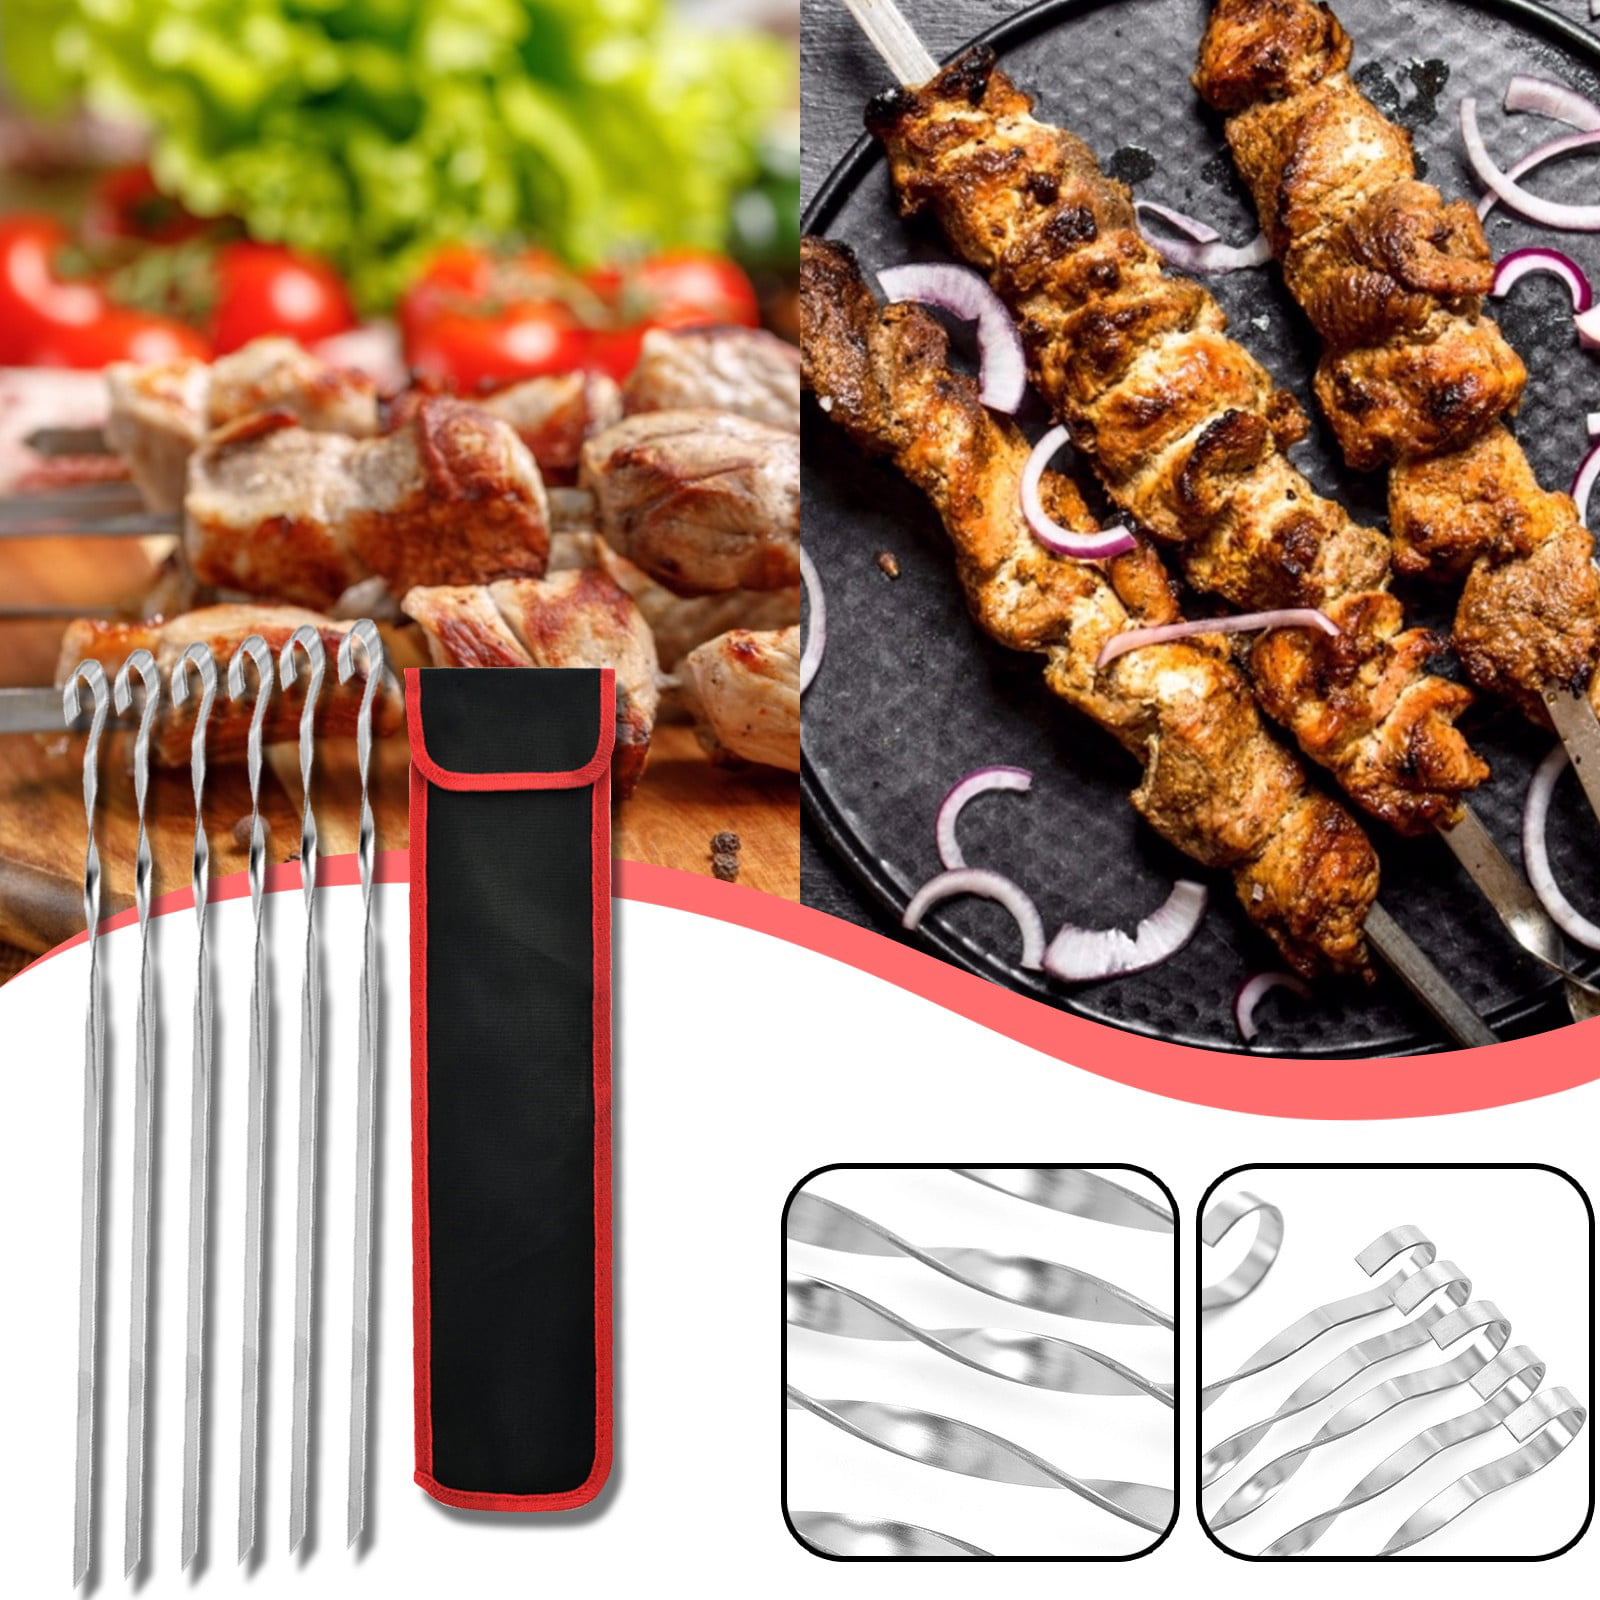 6 X BBQ Barbecue Stainless Steel Grilling Kabob Kebab Flat Skewers Needles METAL 